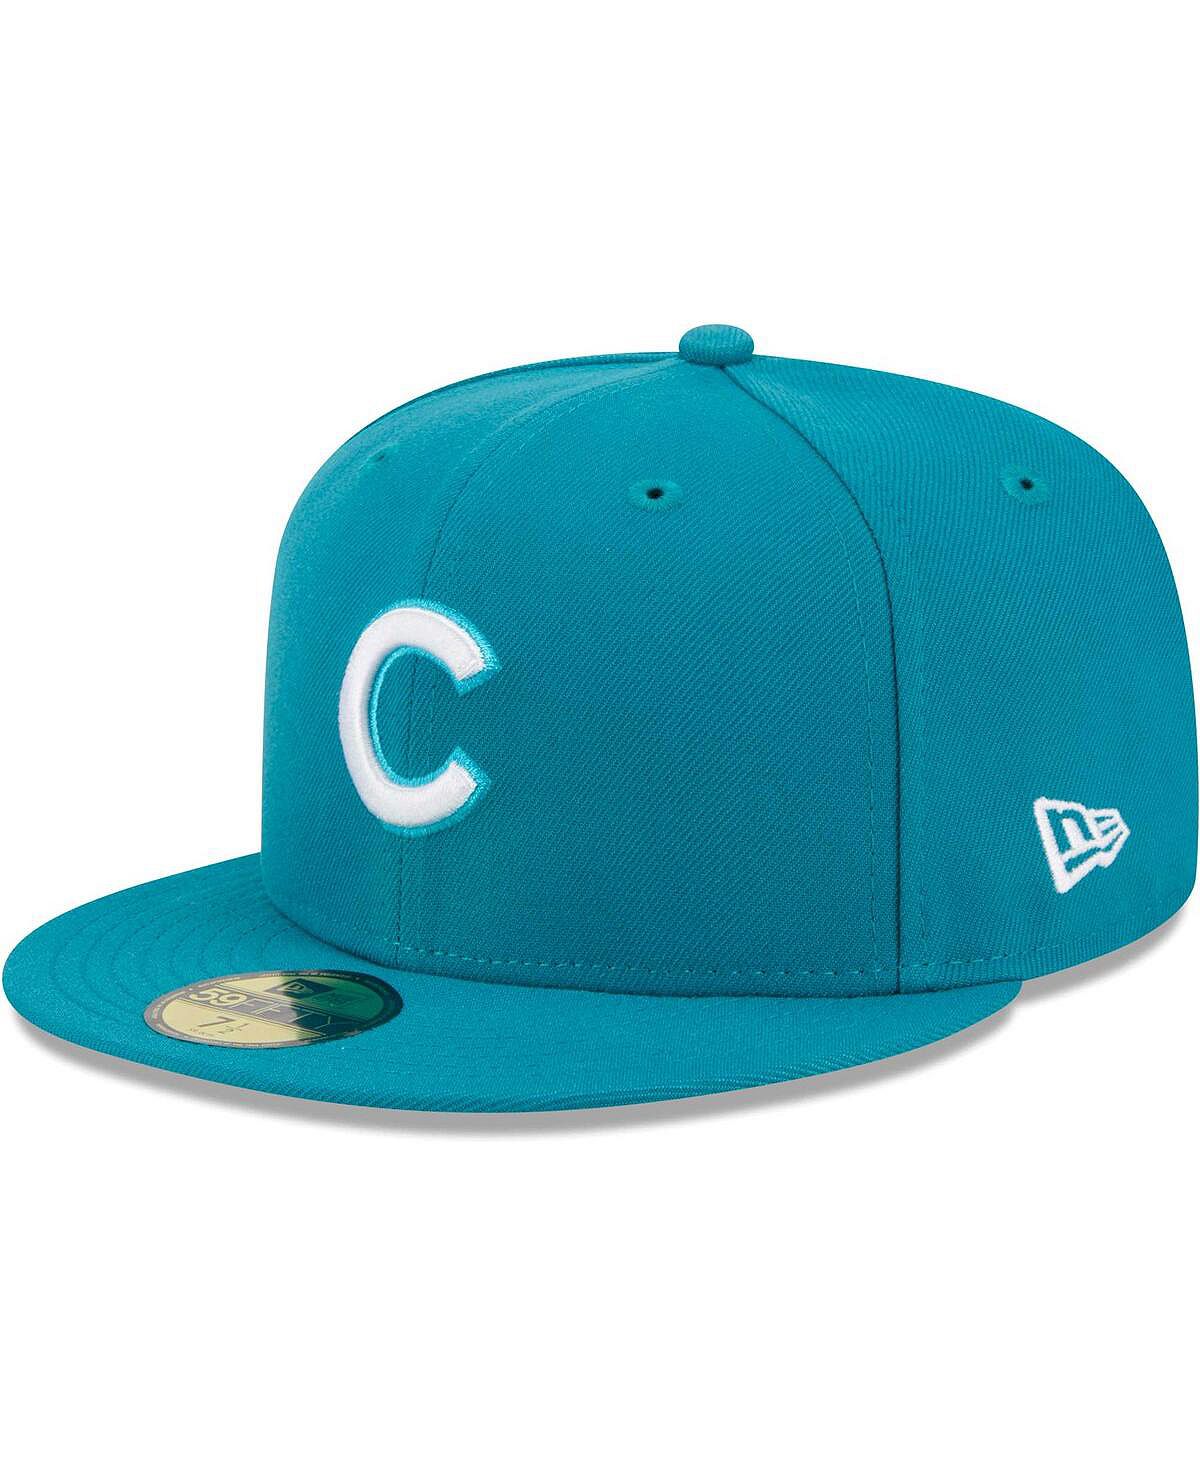 Мужская приталенная кепка Chicago Cubs 59FIFTY бирюзового цвета New Era